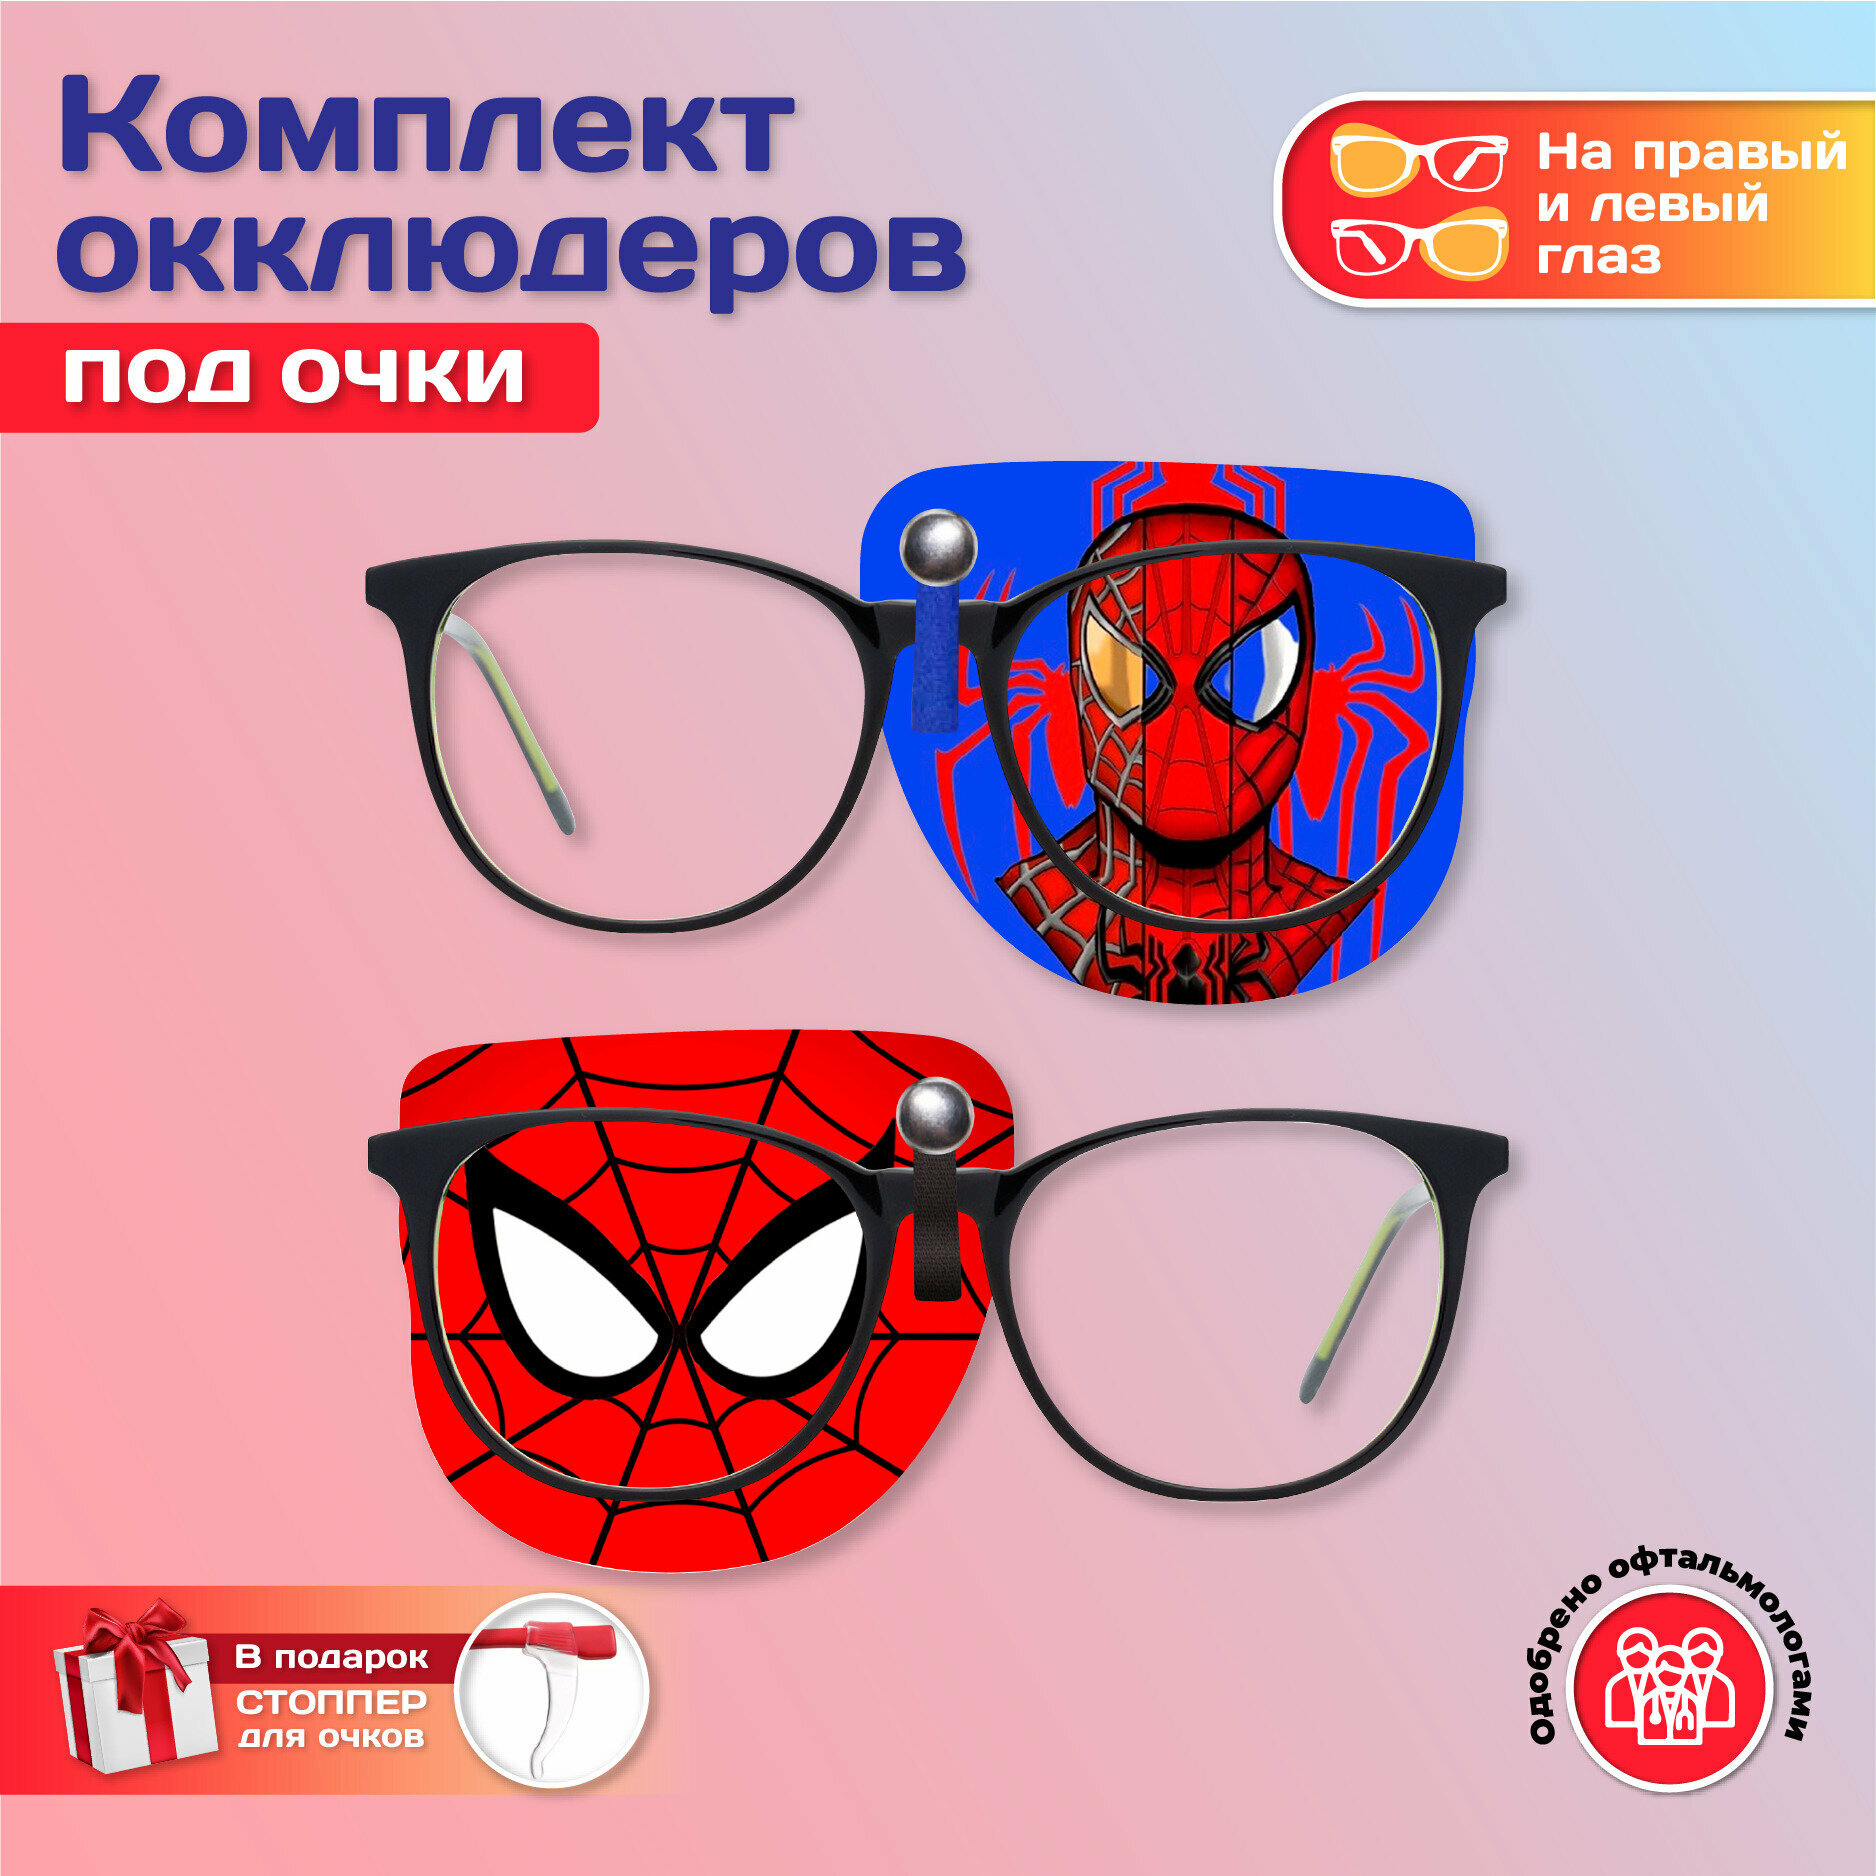 Комплект окклюдеров под очки "Человек-Паук 2" на левый и правый глаз